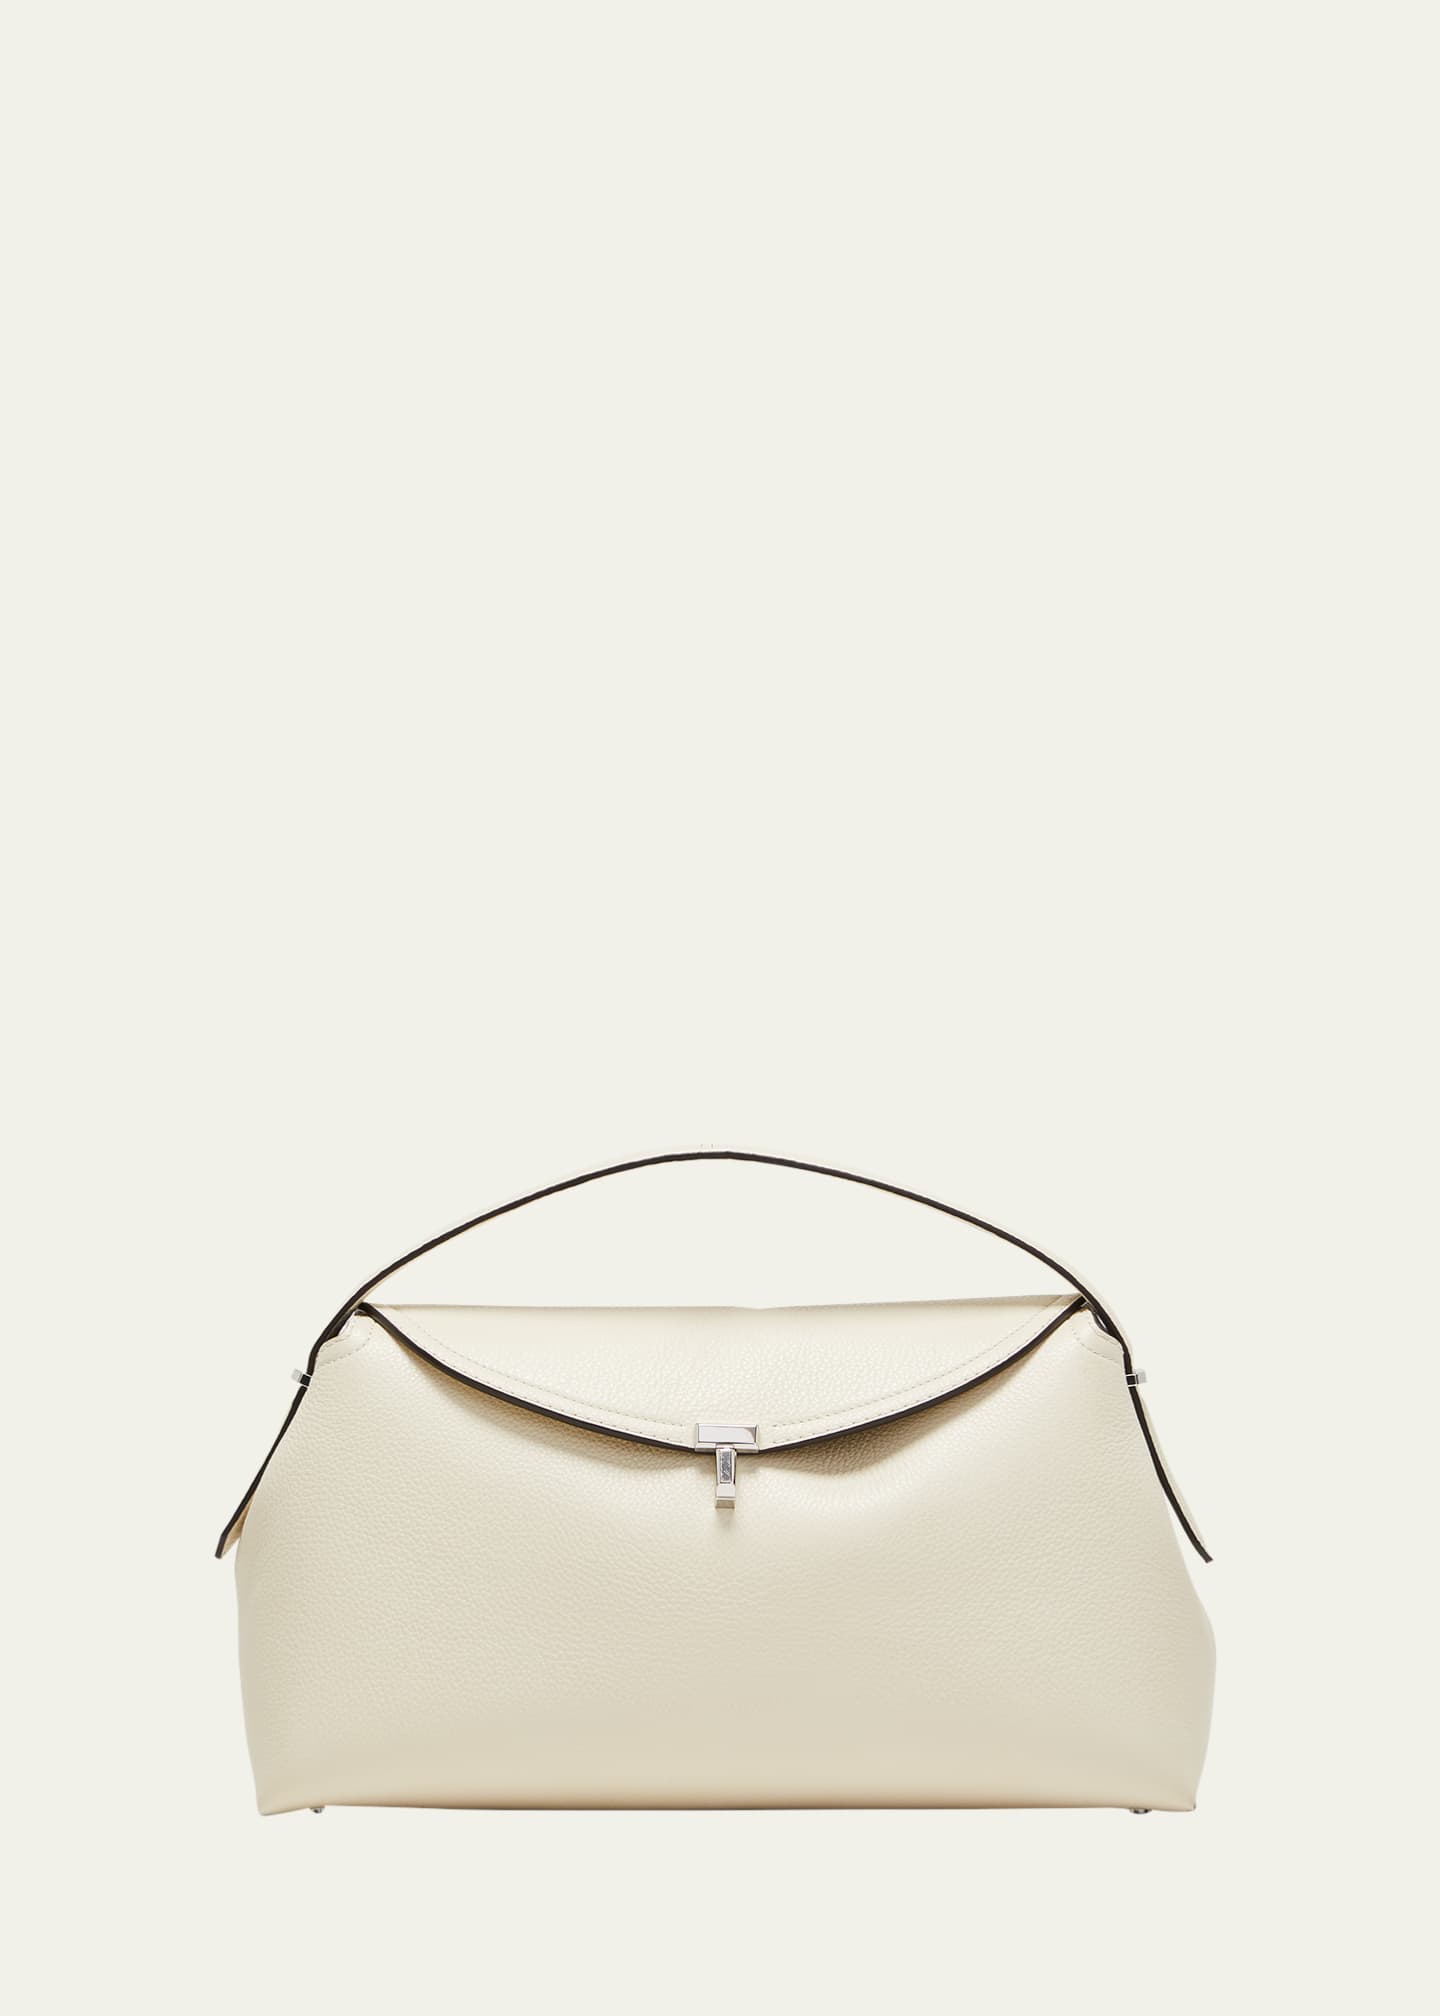 Toteme T-Lock Top Handle Bag in Pebble Grain Leather | Bergdorf Goodman